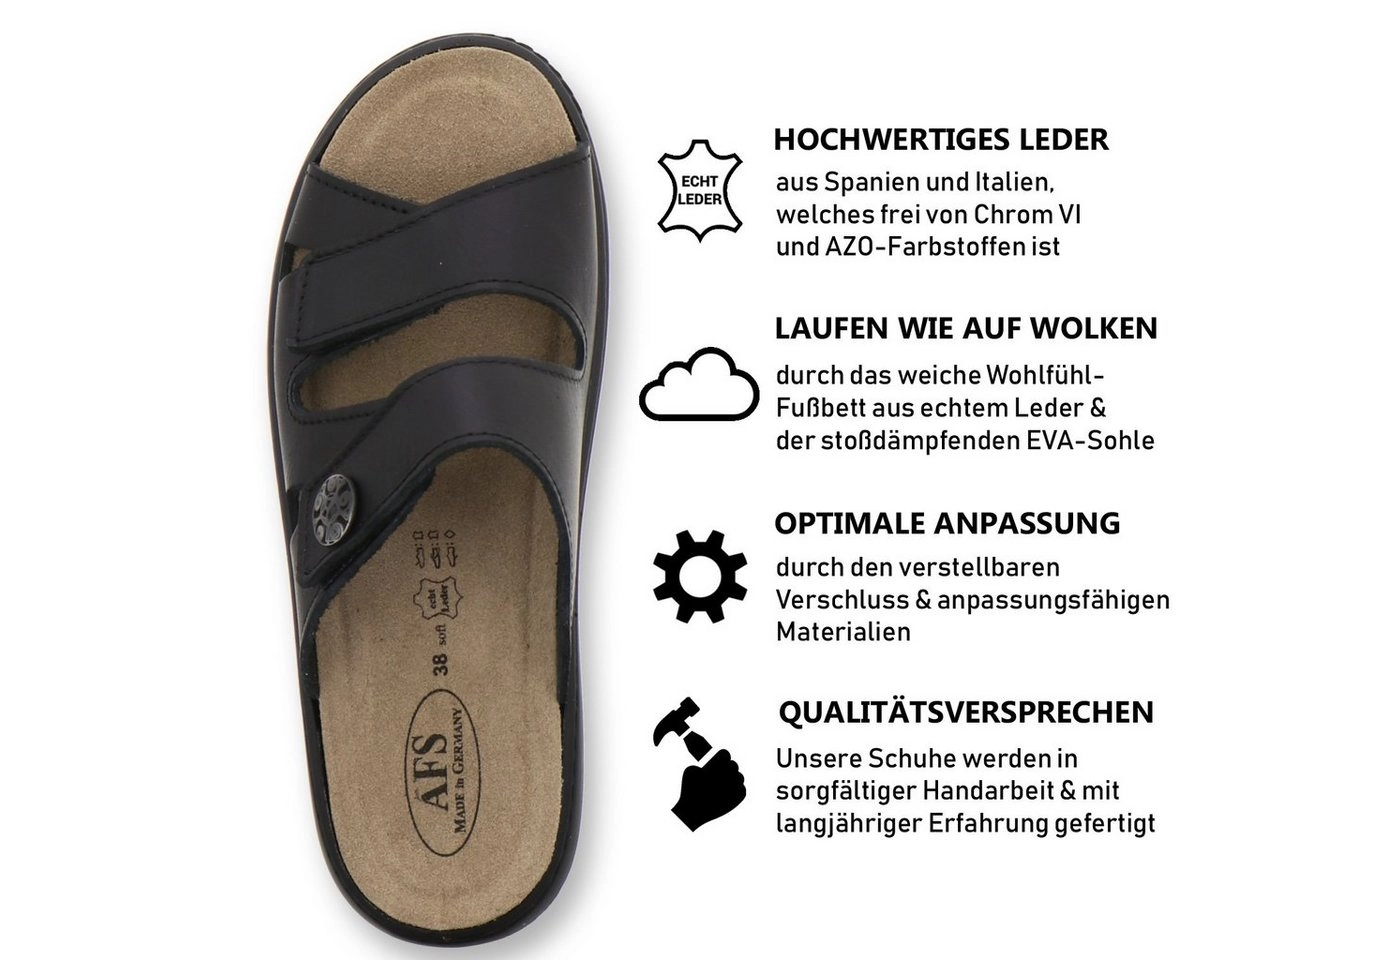 AFS-Schuhe »2808« Pantolette für Damen aus Leder mit Wechselfußbett, Made in Germany